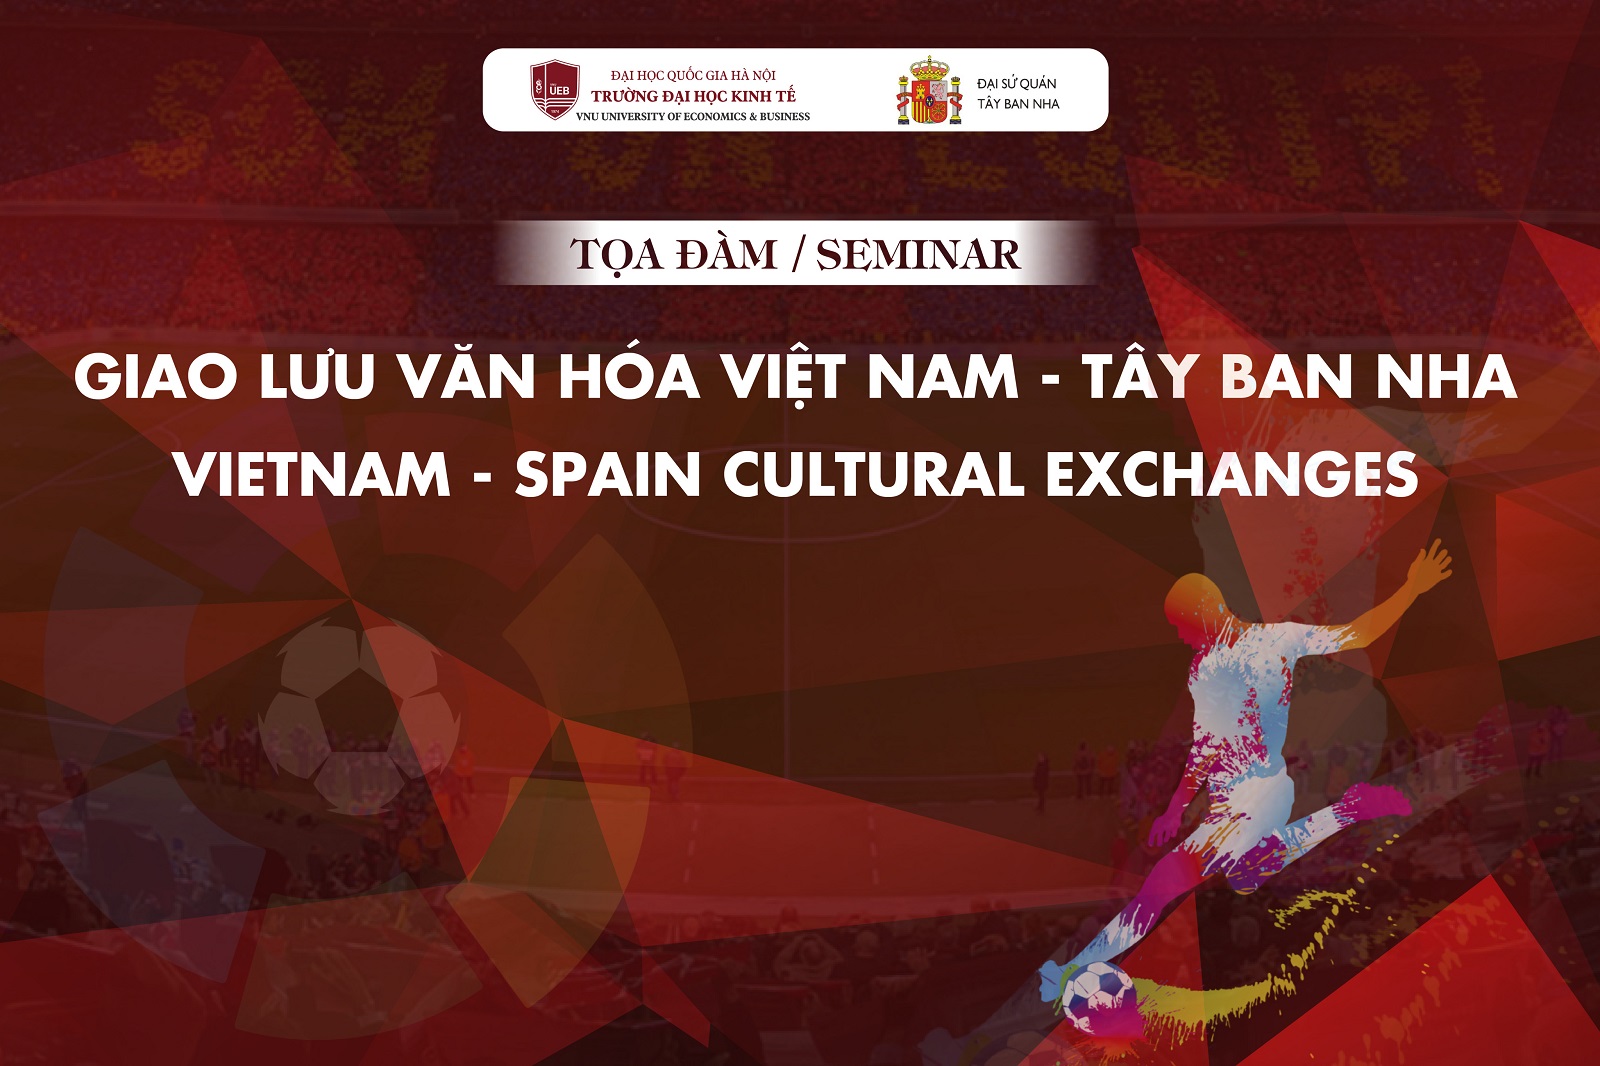 Giao lưu văn hóa Việt Nam - Tây Ban Nha tại Trường Đại học Kinh tế - ĐHQGHN